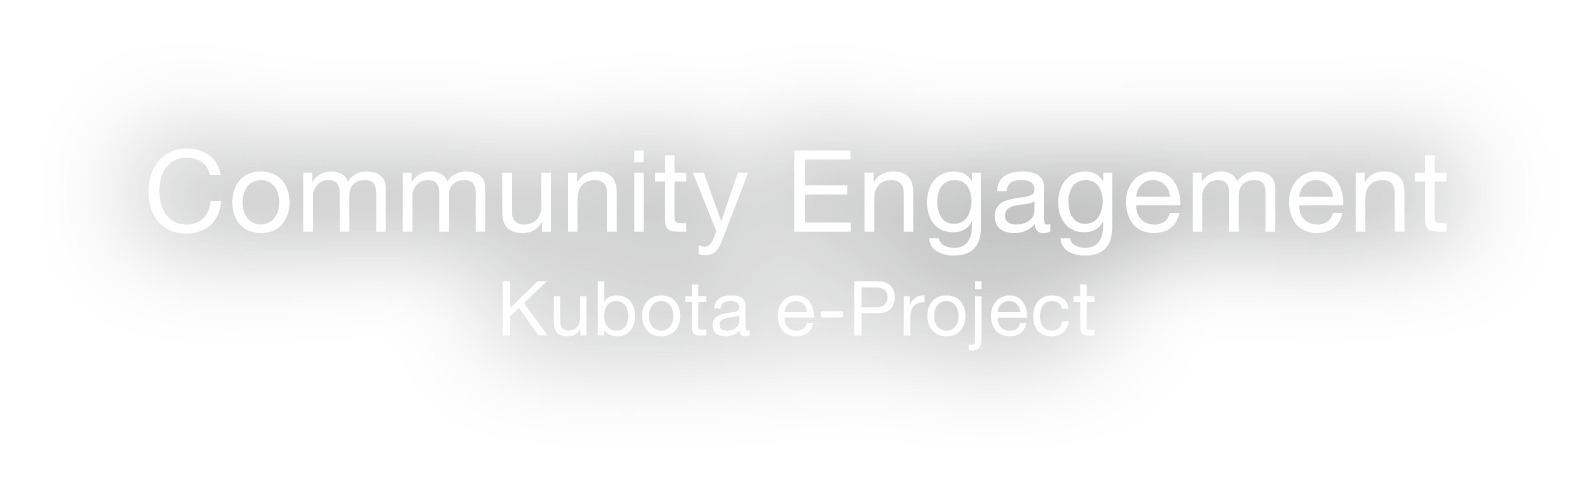 Community Engagement: Kubota e-Project